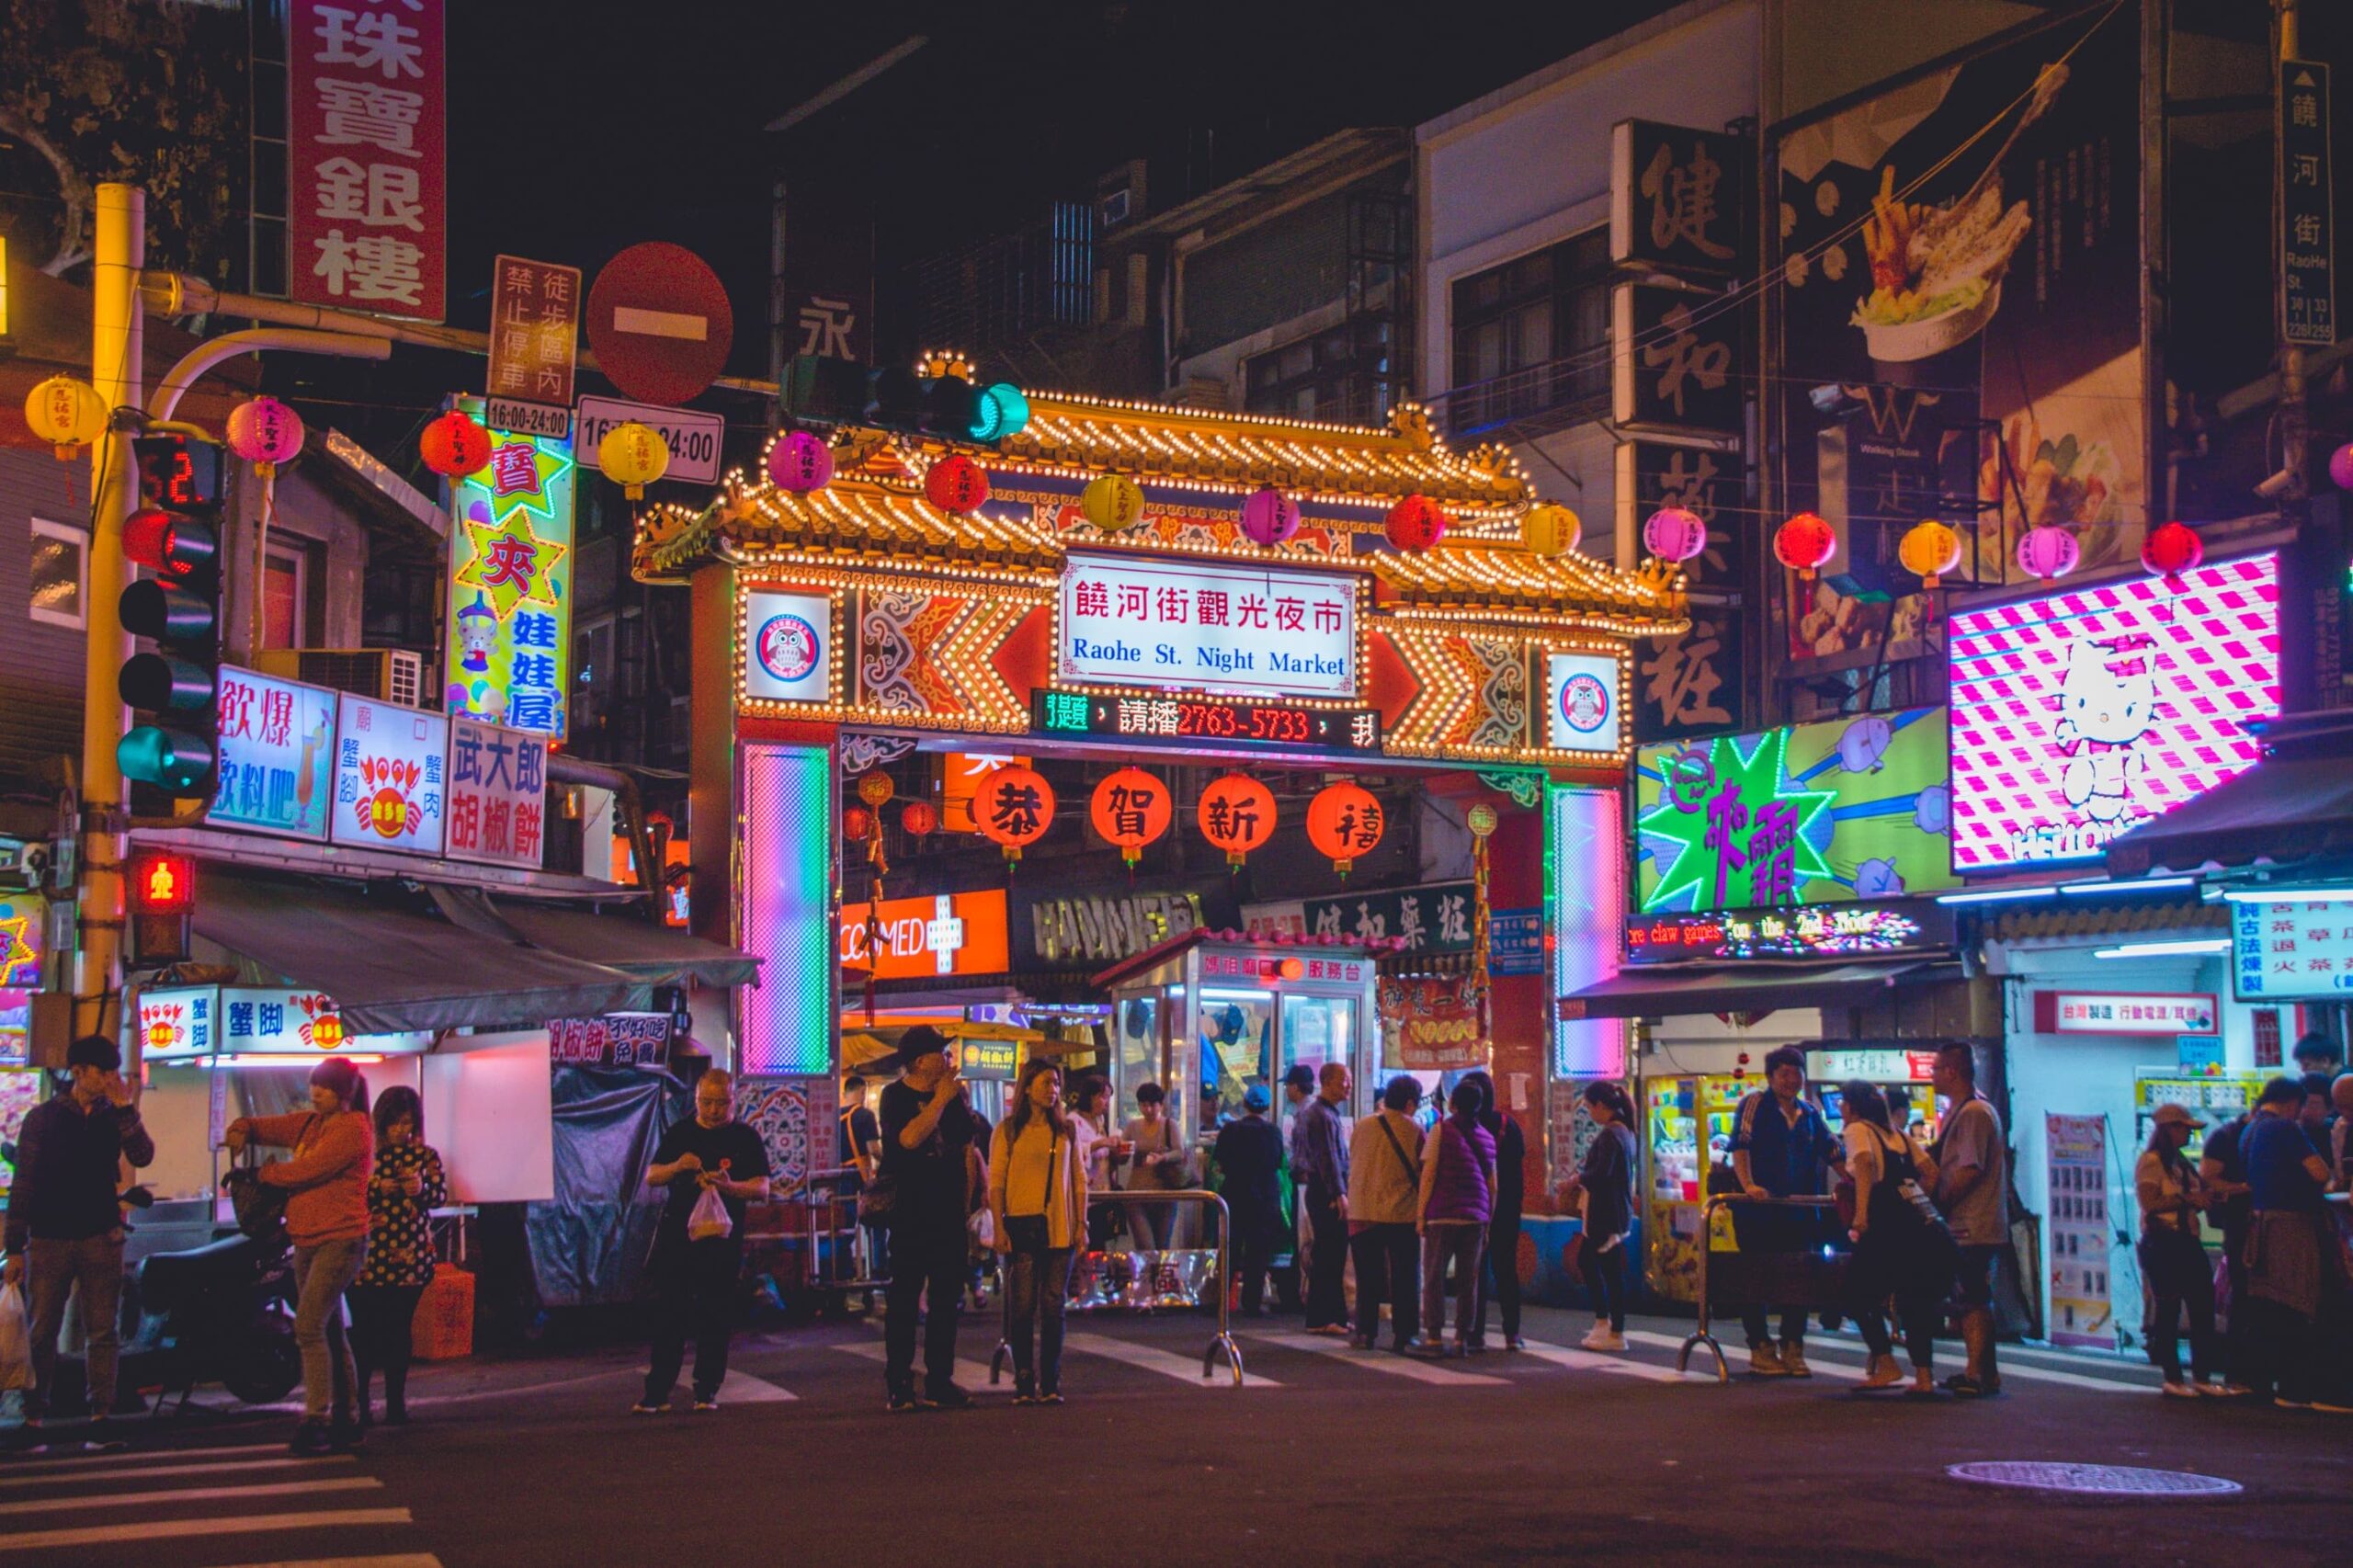 Raohe Night Market, Taipei, Taiwan